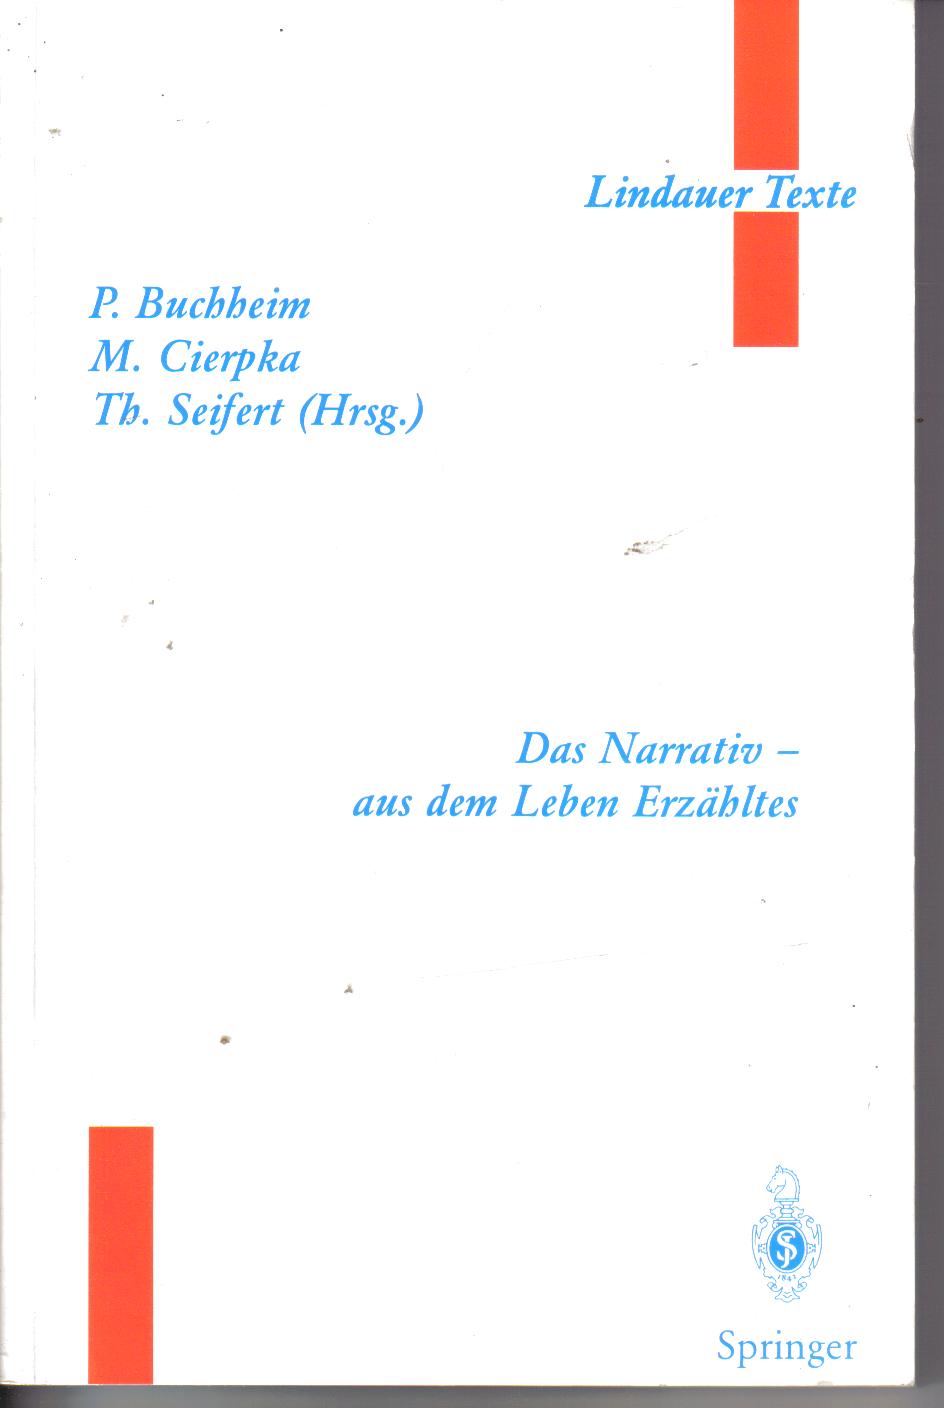 Lindauer TexteDas Narrativ-aus dem Leben ErzaehltesP. Buchheim, M. Cierpka, T. Seifert